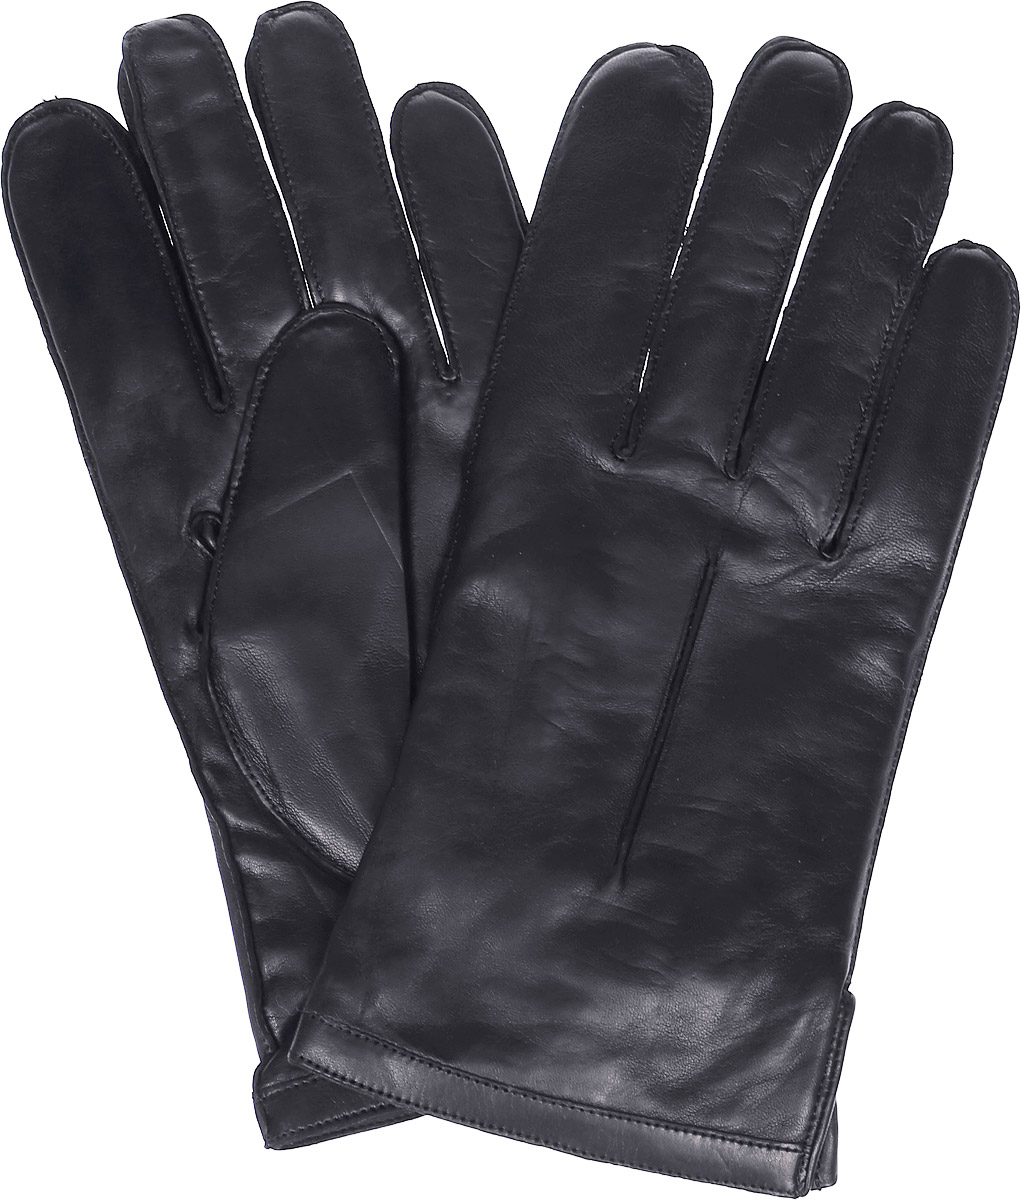 Перчатки мужские Michel Katana, цвет: черный. K12-NANCY. Размер 9,5